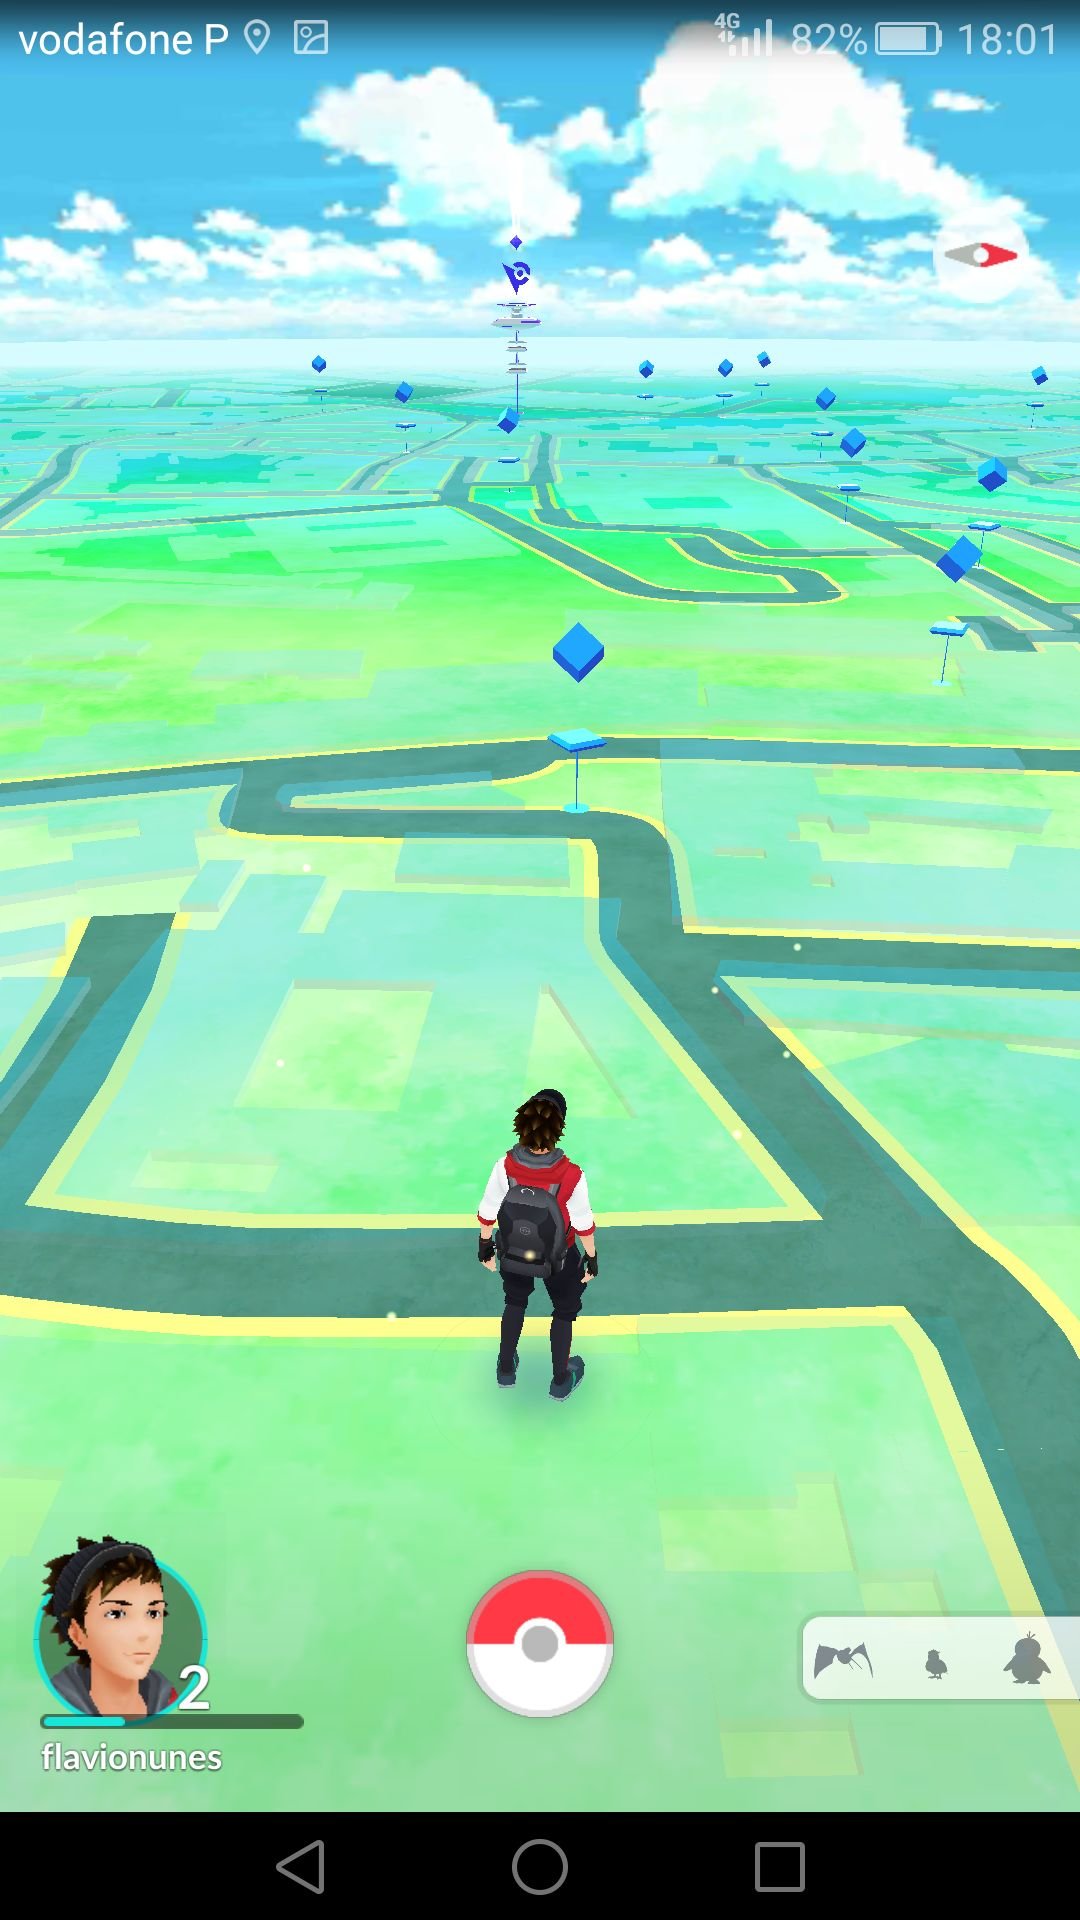 Aventuras com o companheiro — Pokémon GO Centro de Apoio